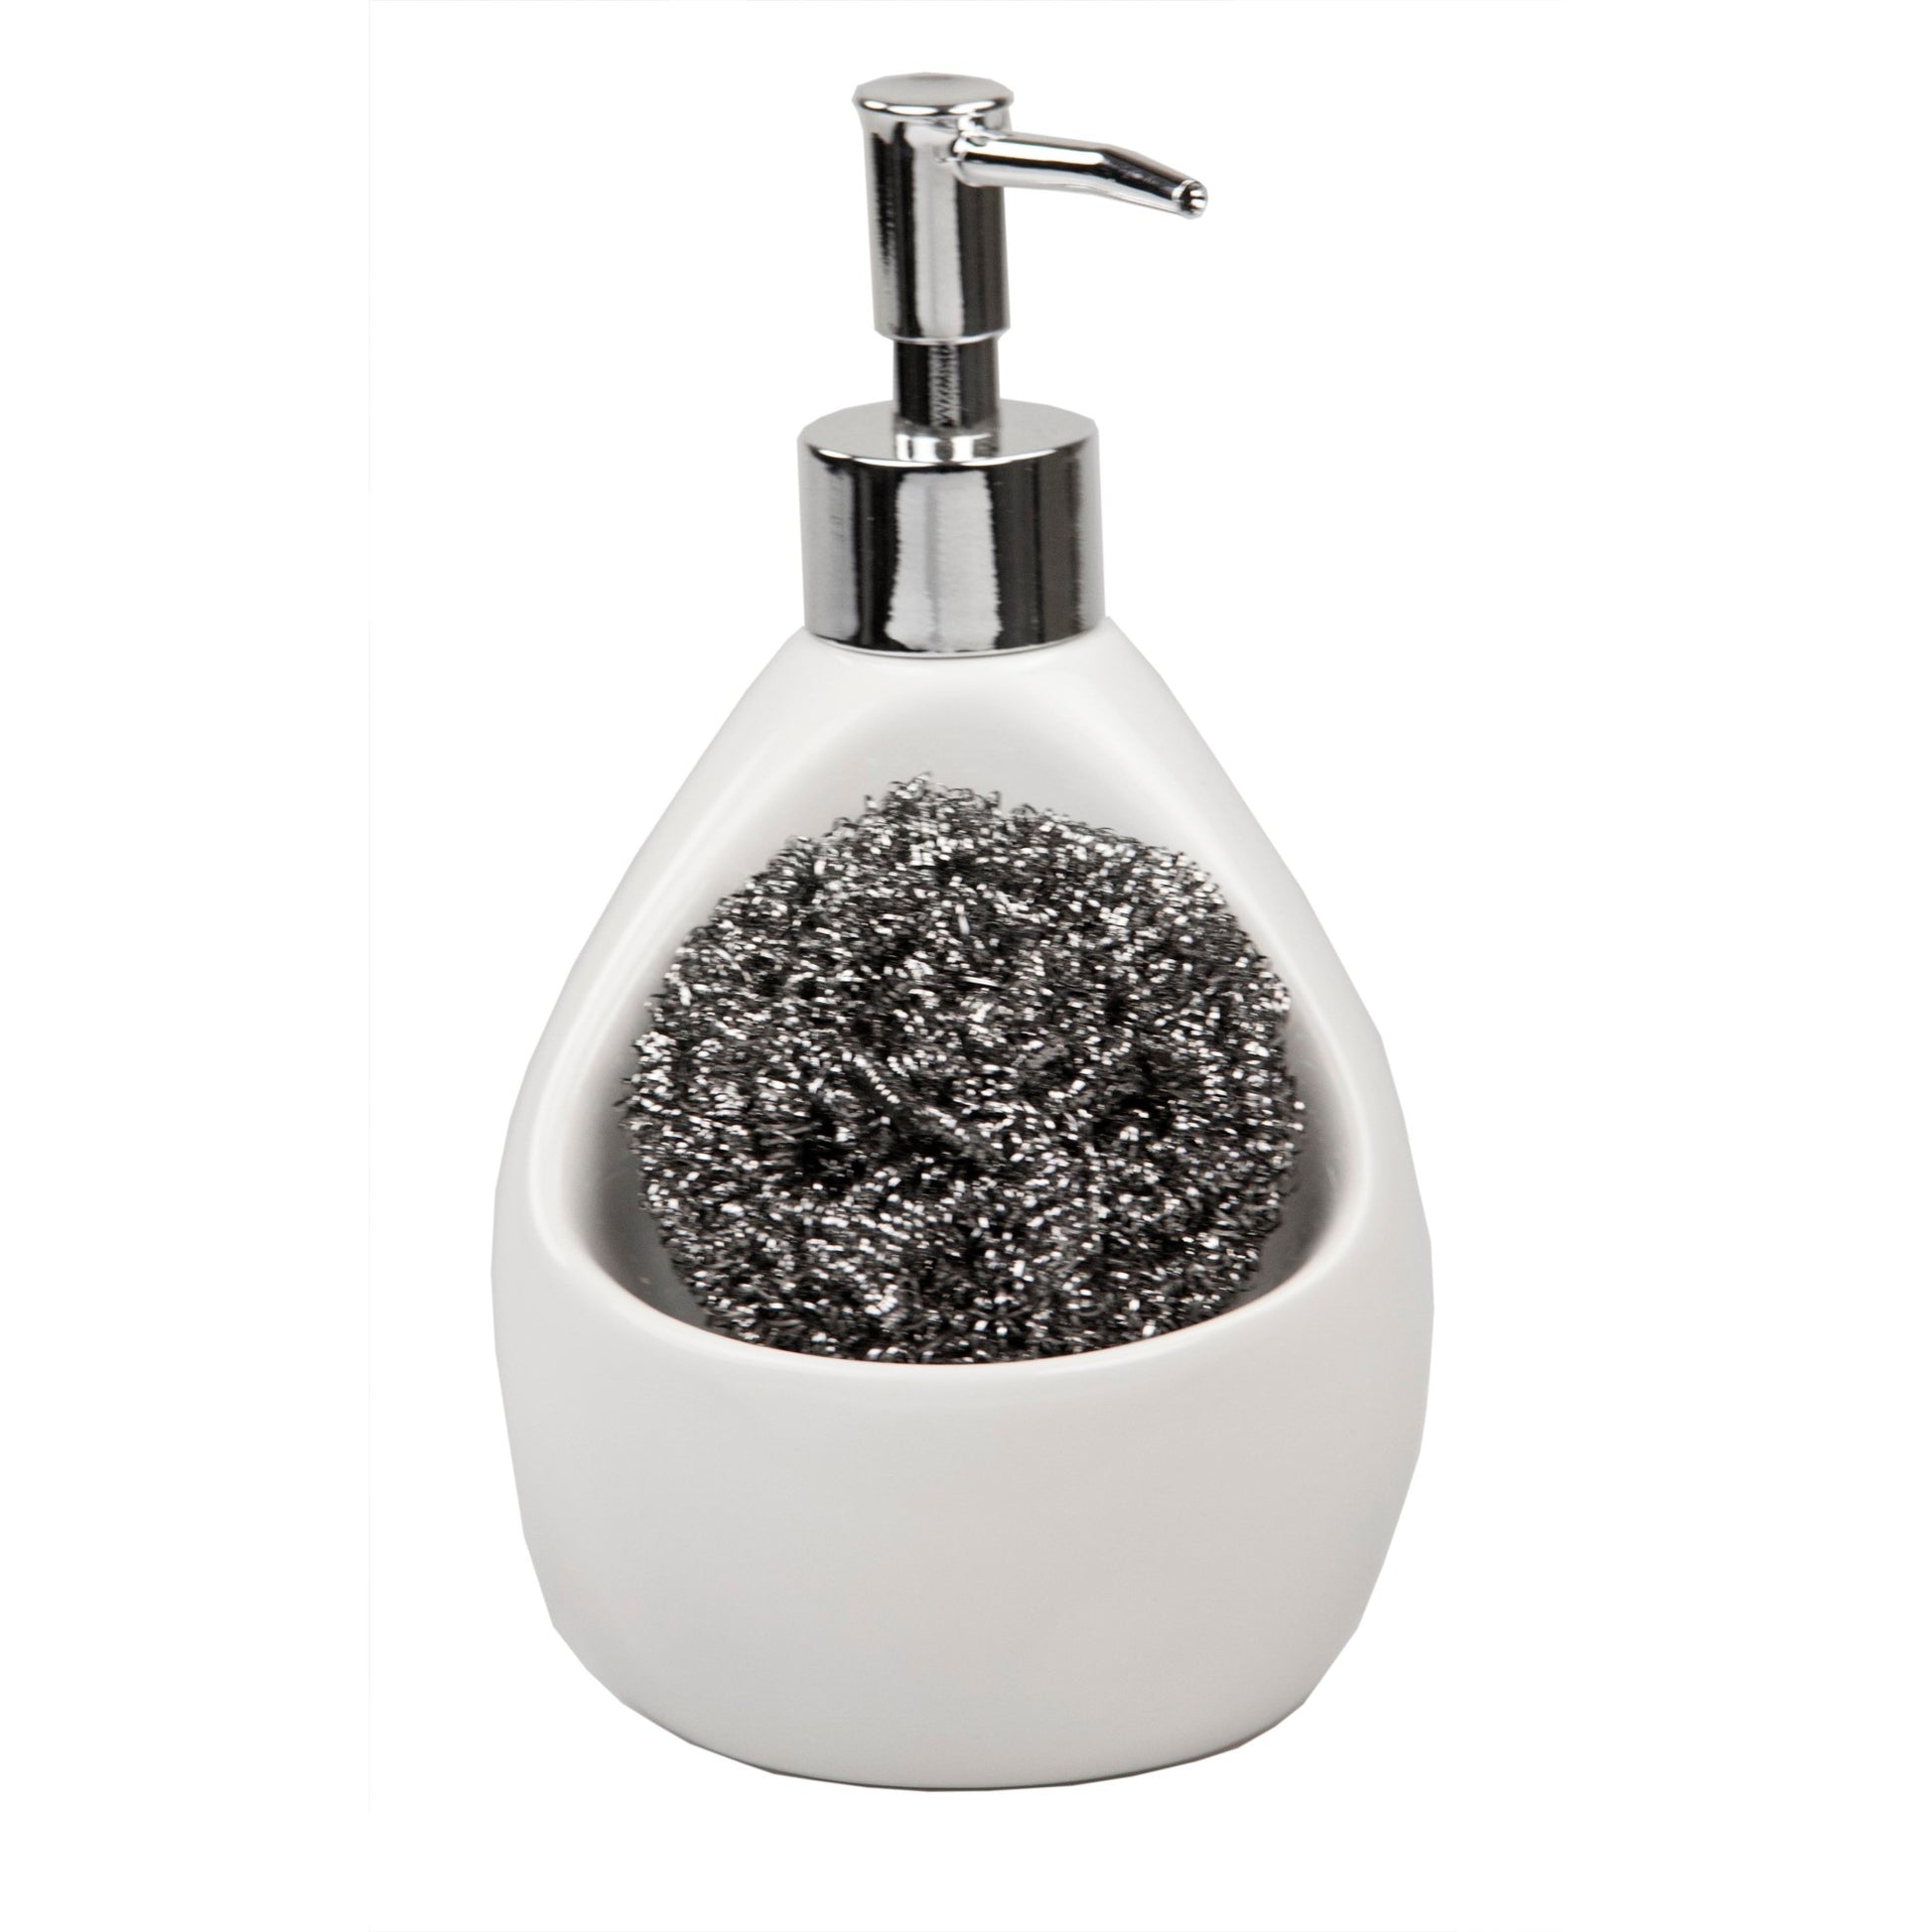 Home Basics Soap Dispenser with Sponge Holder - White